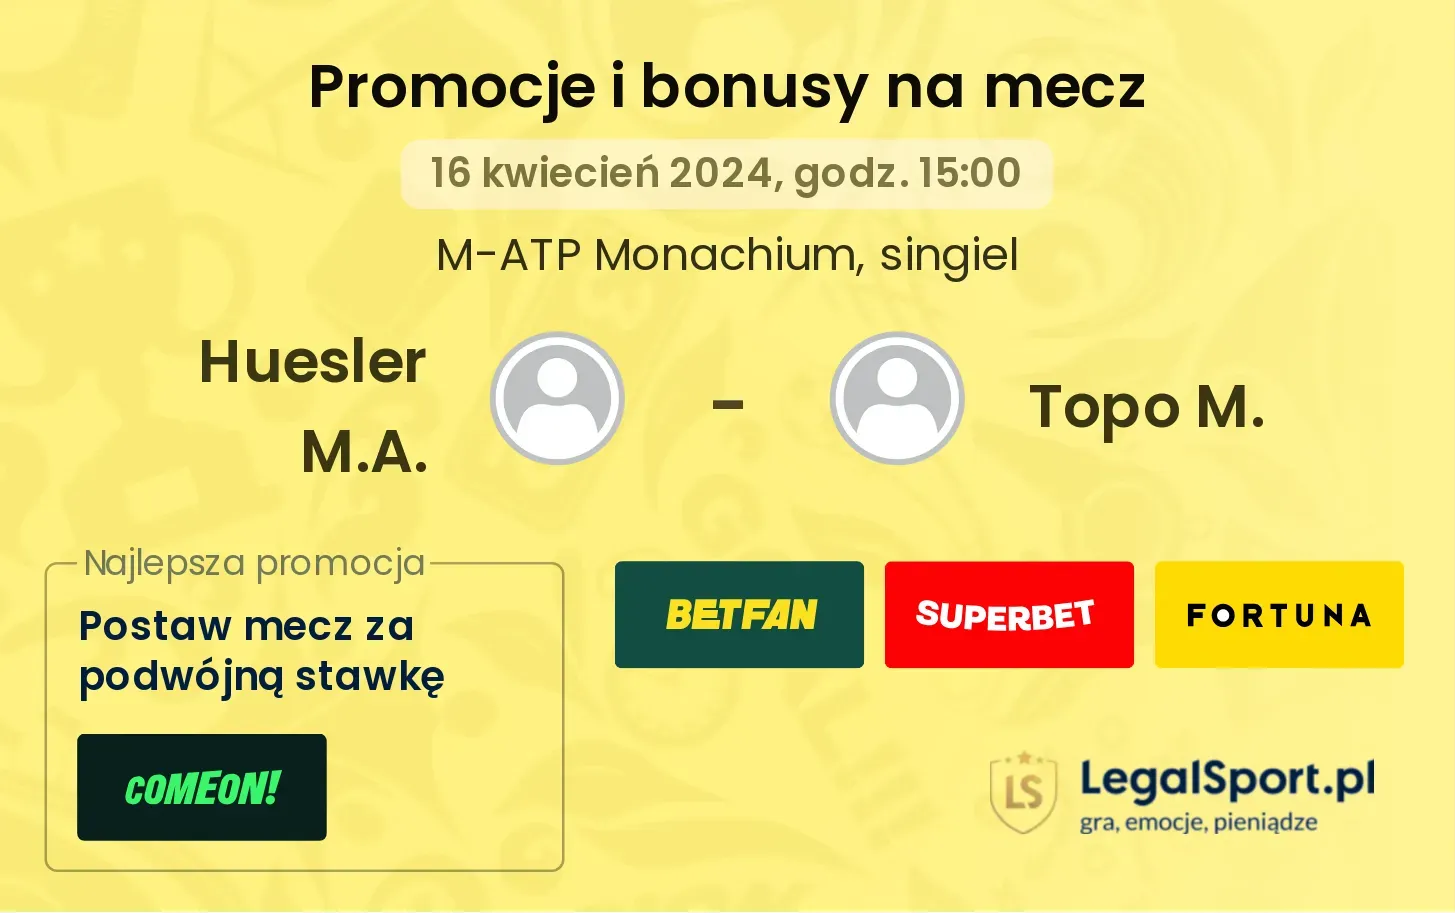 Huesler M.A. - Topo M. promocje bonusy na mecz